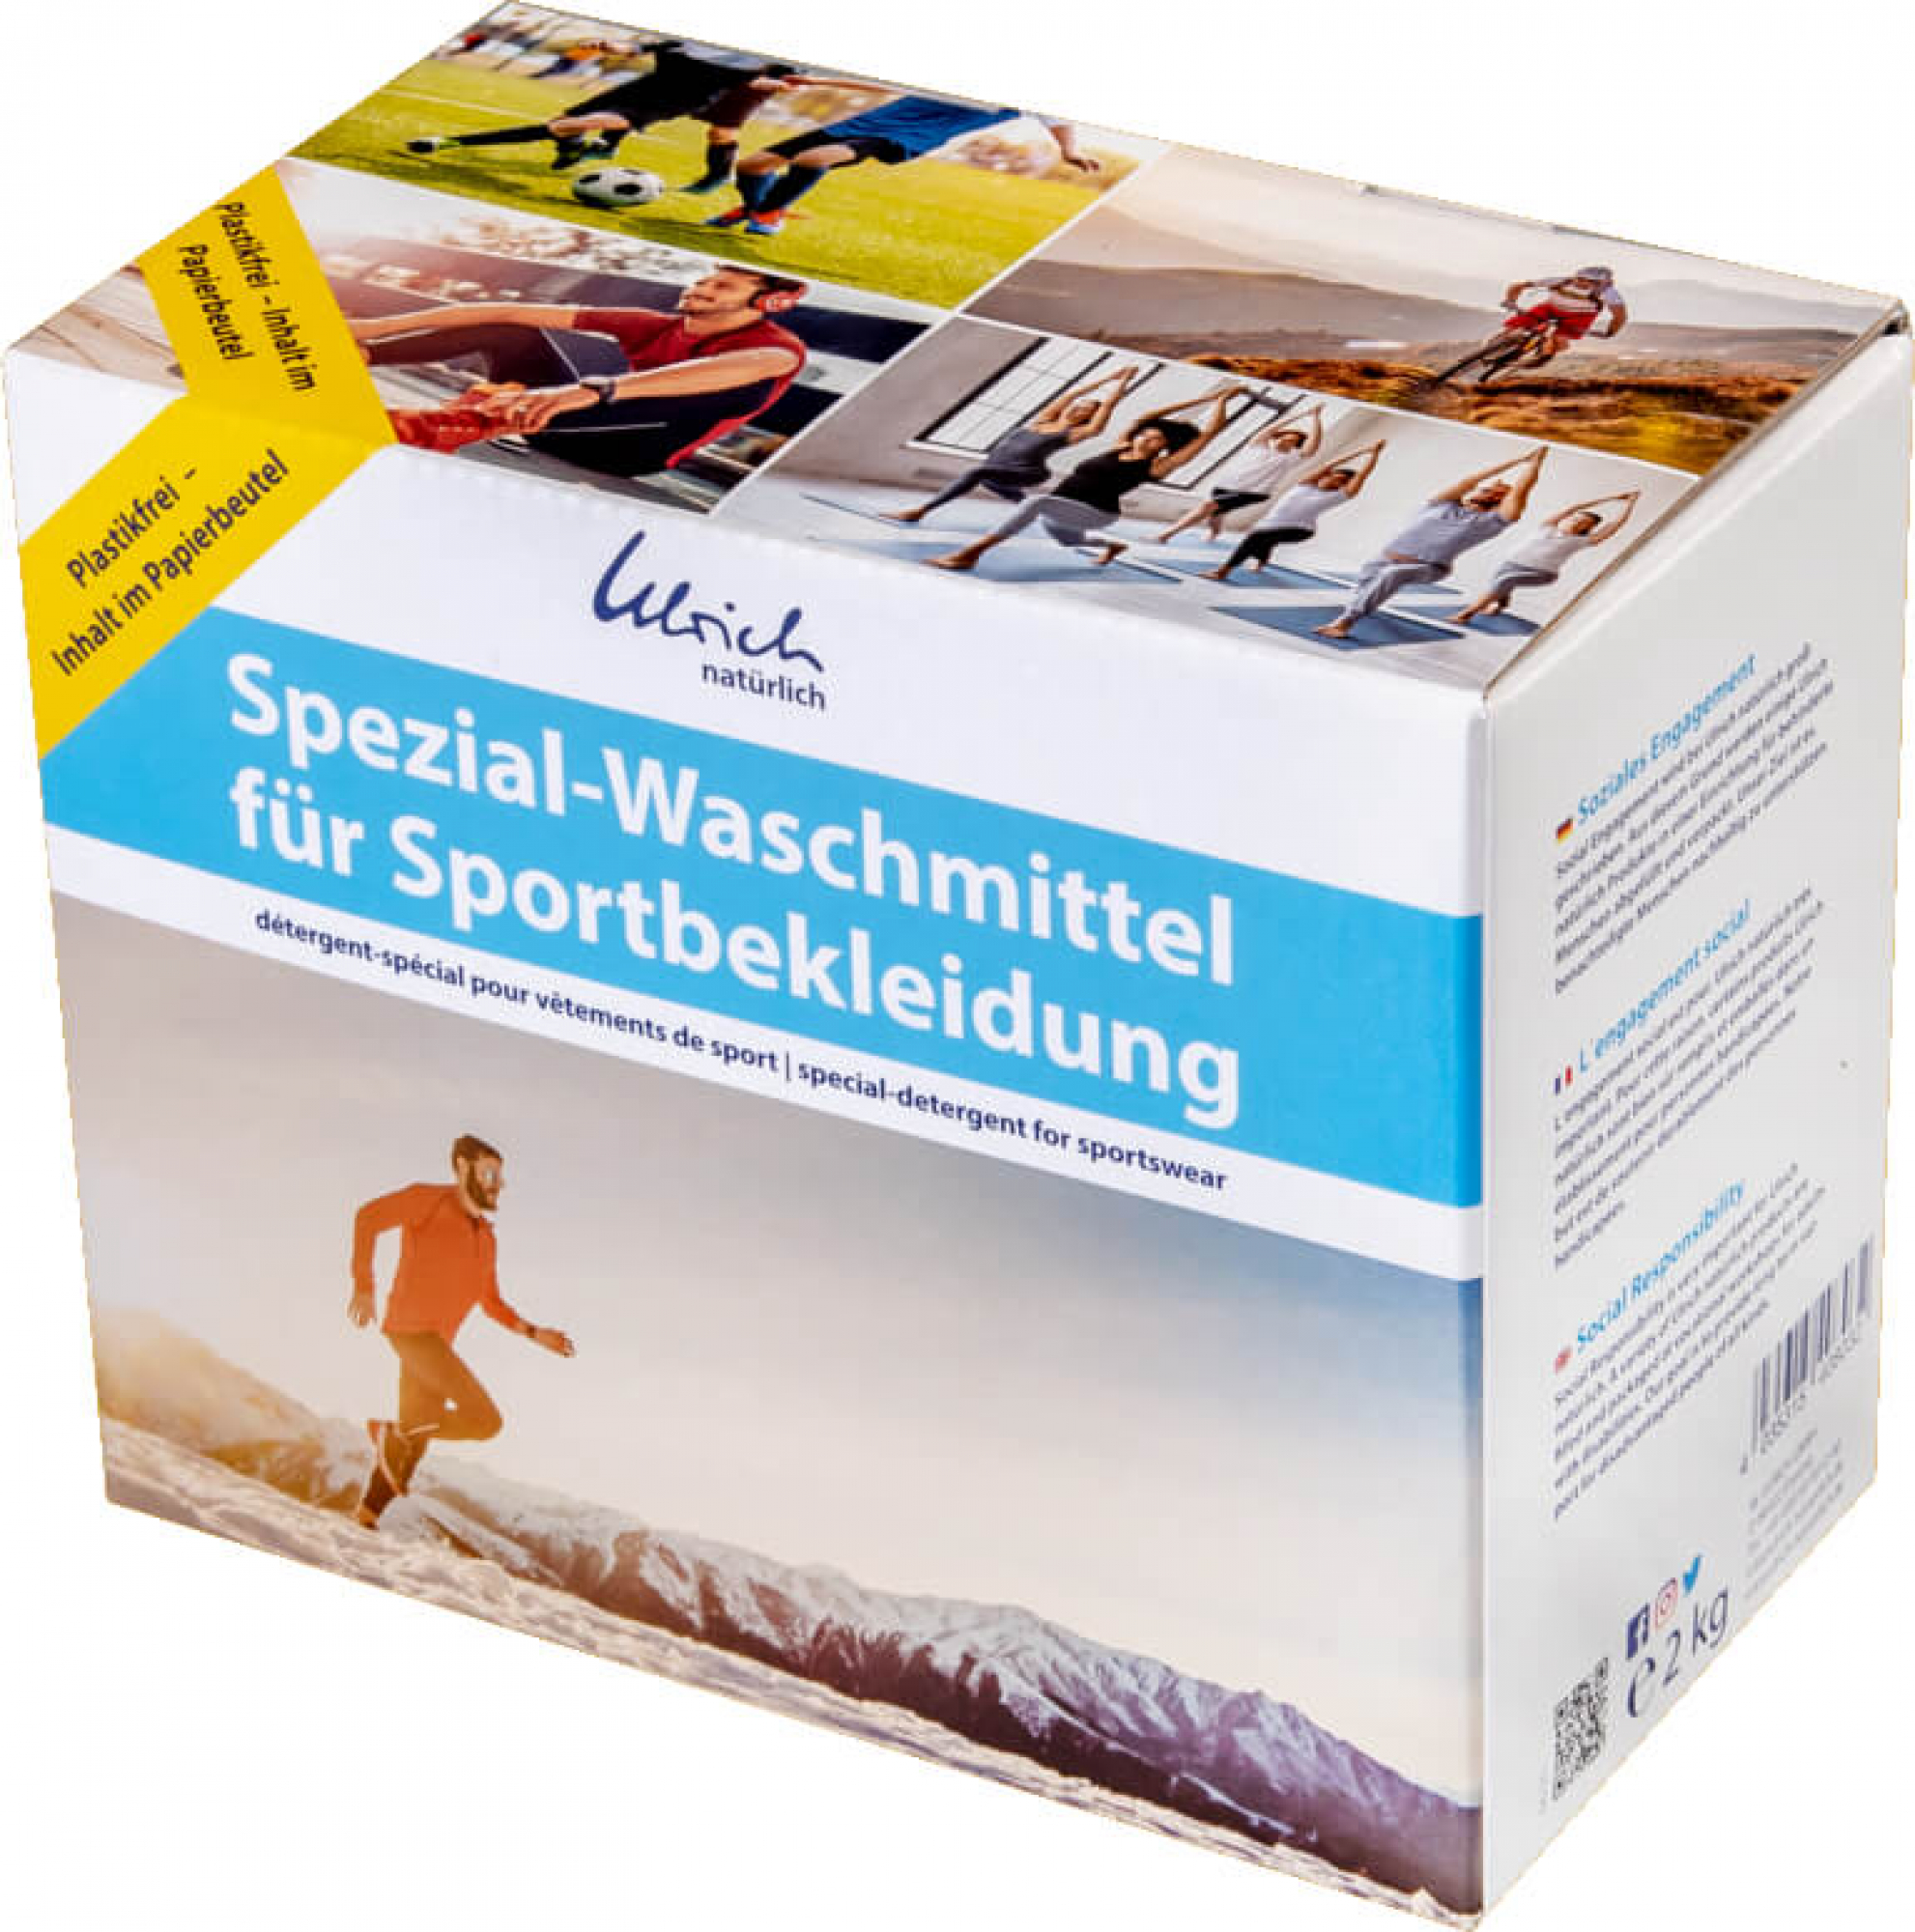 Ulrich natürlich Spezial-Waschmittel für Sportbekleidung (2 kg)